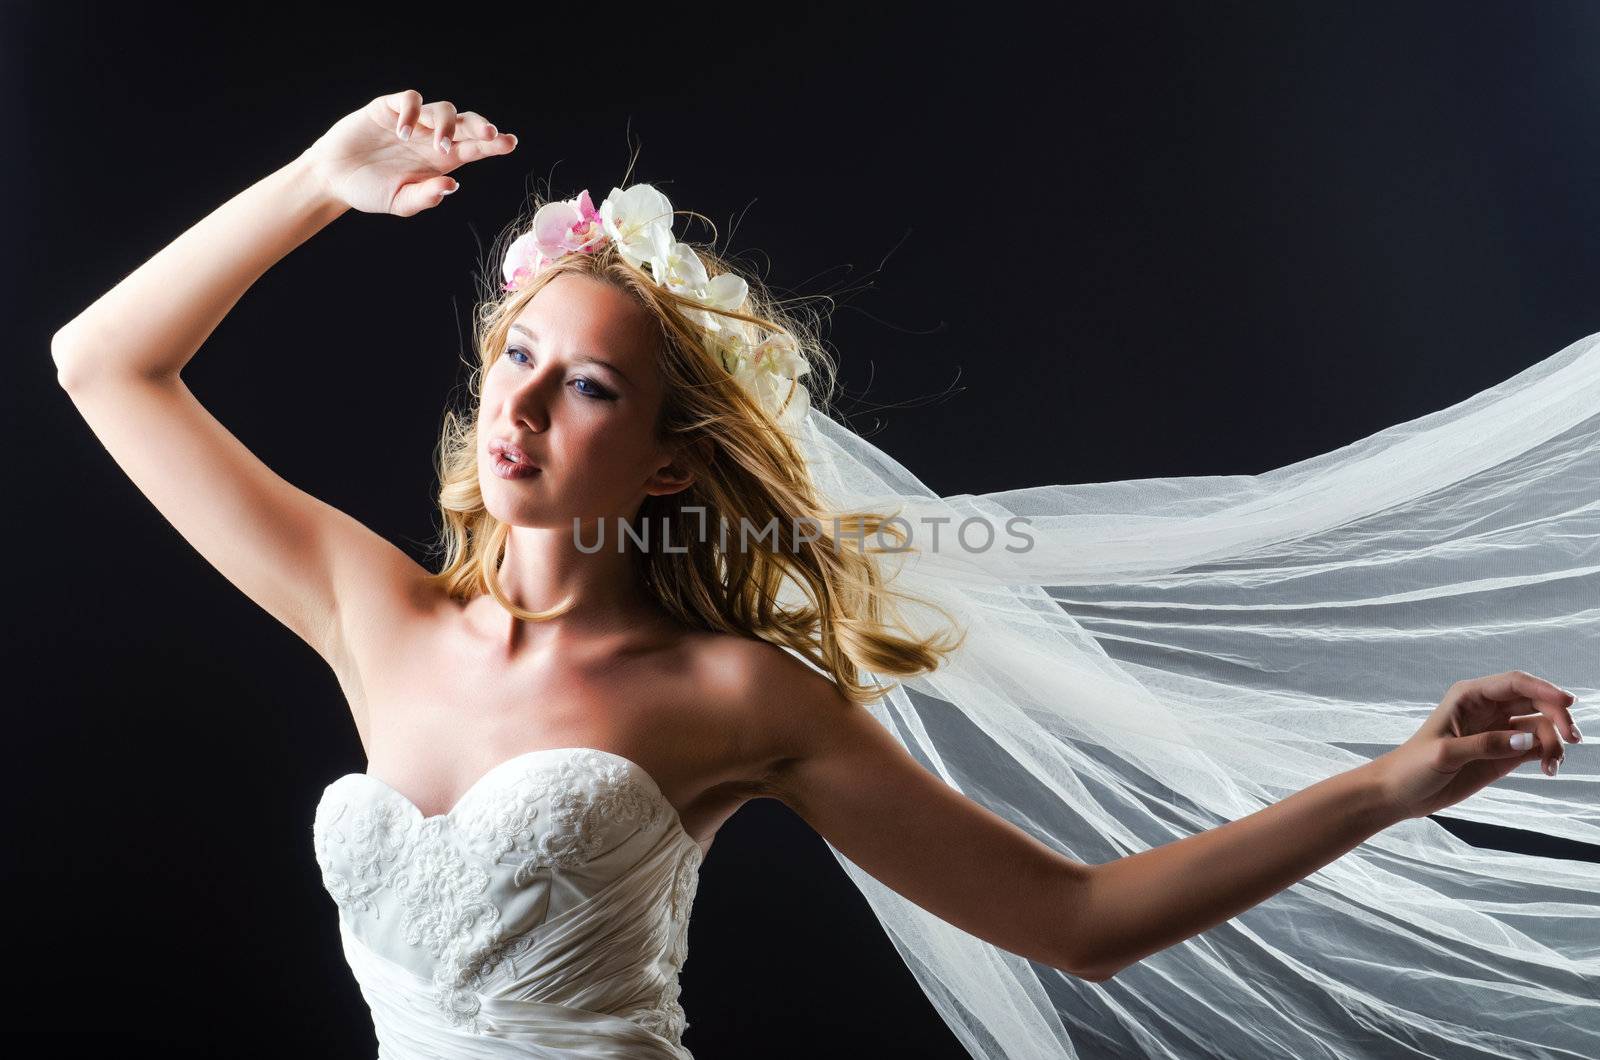 Bride in white dress in studio